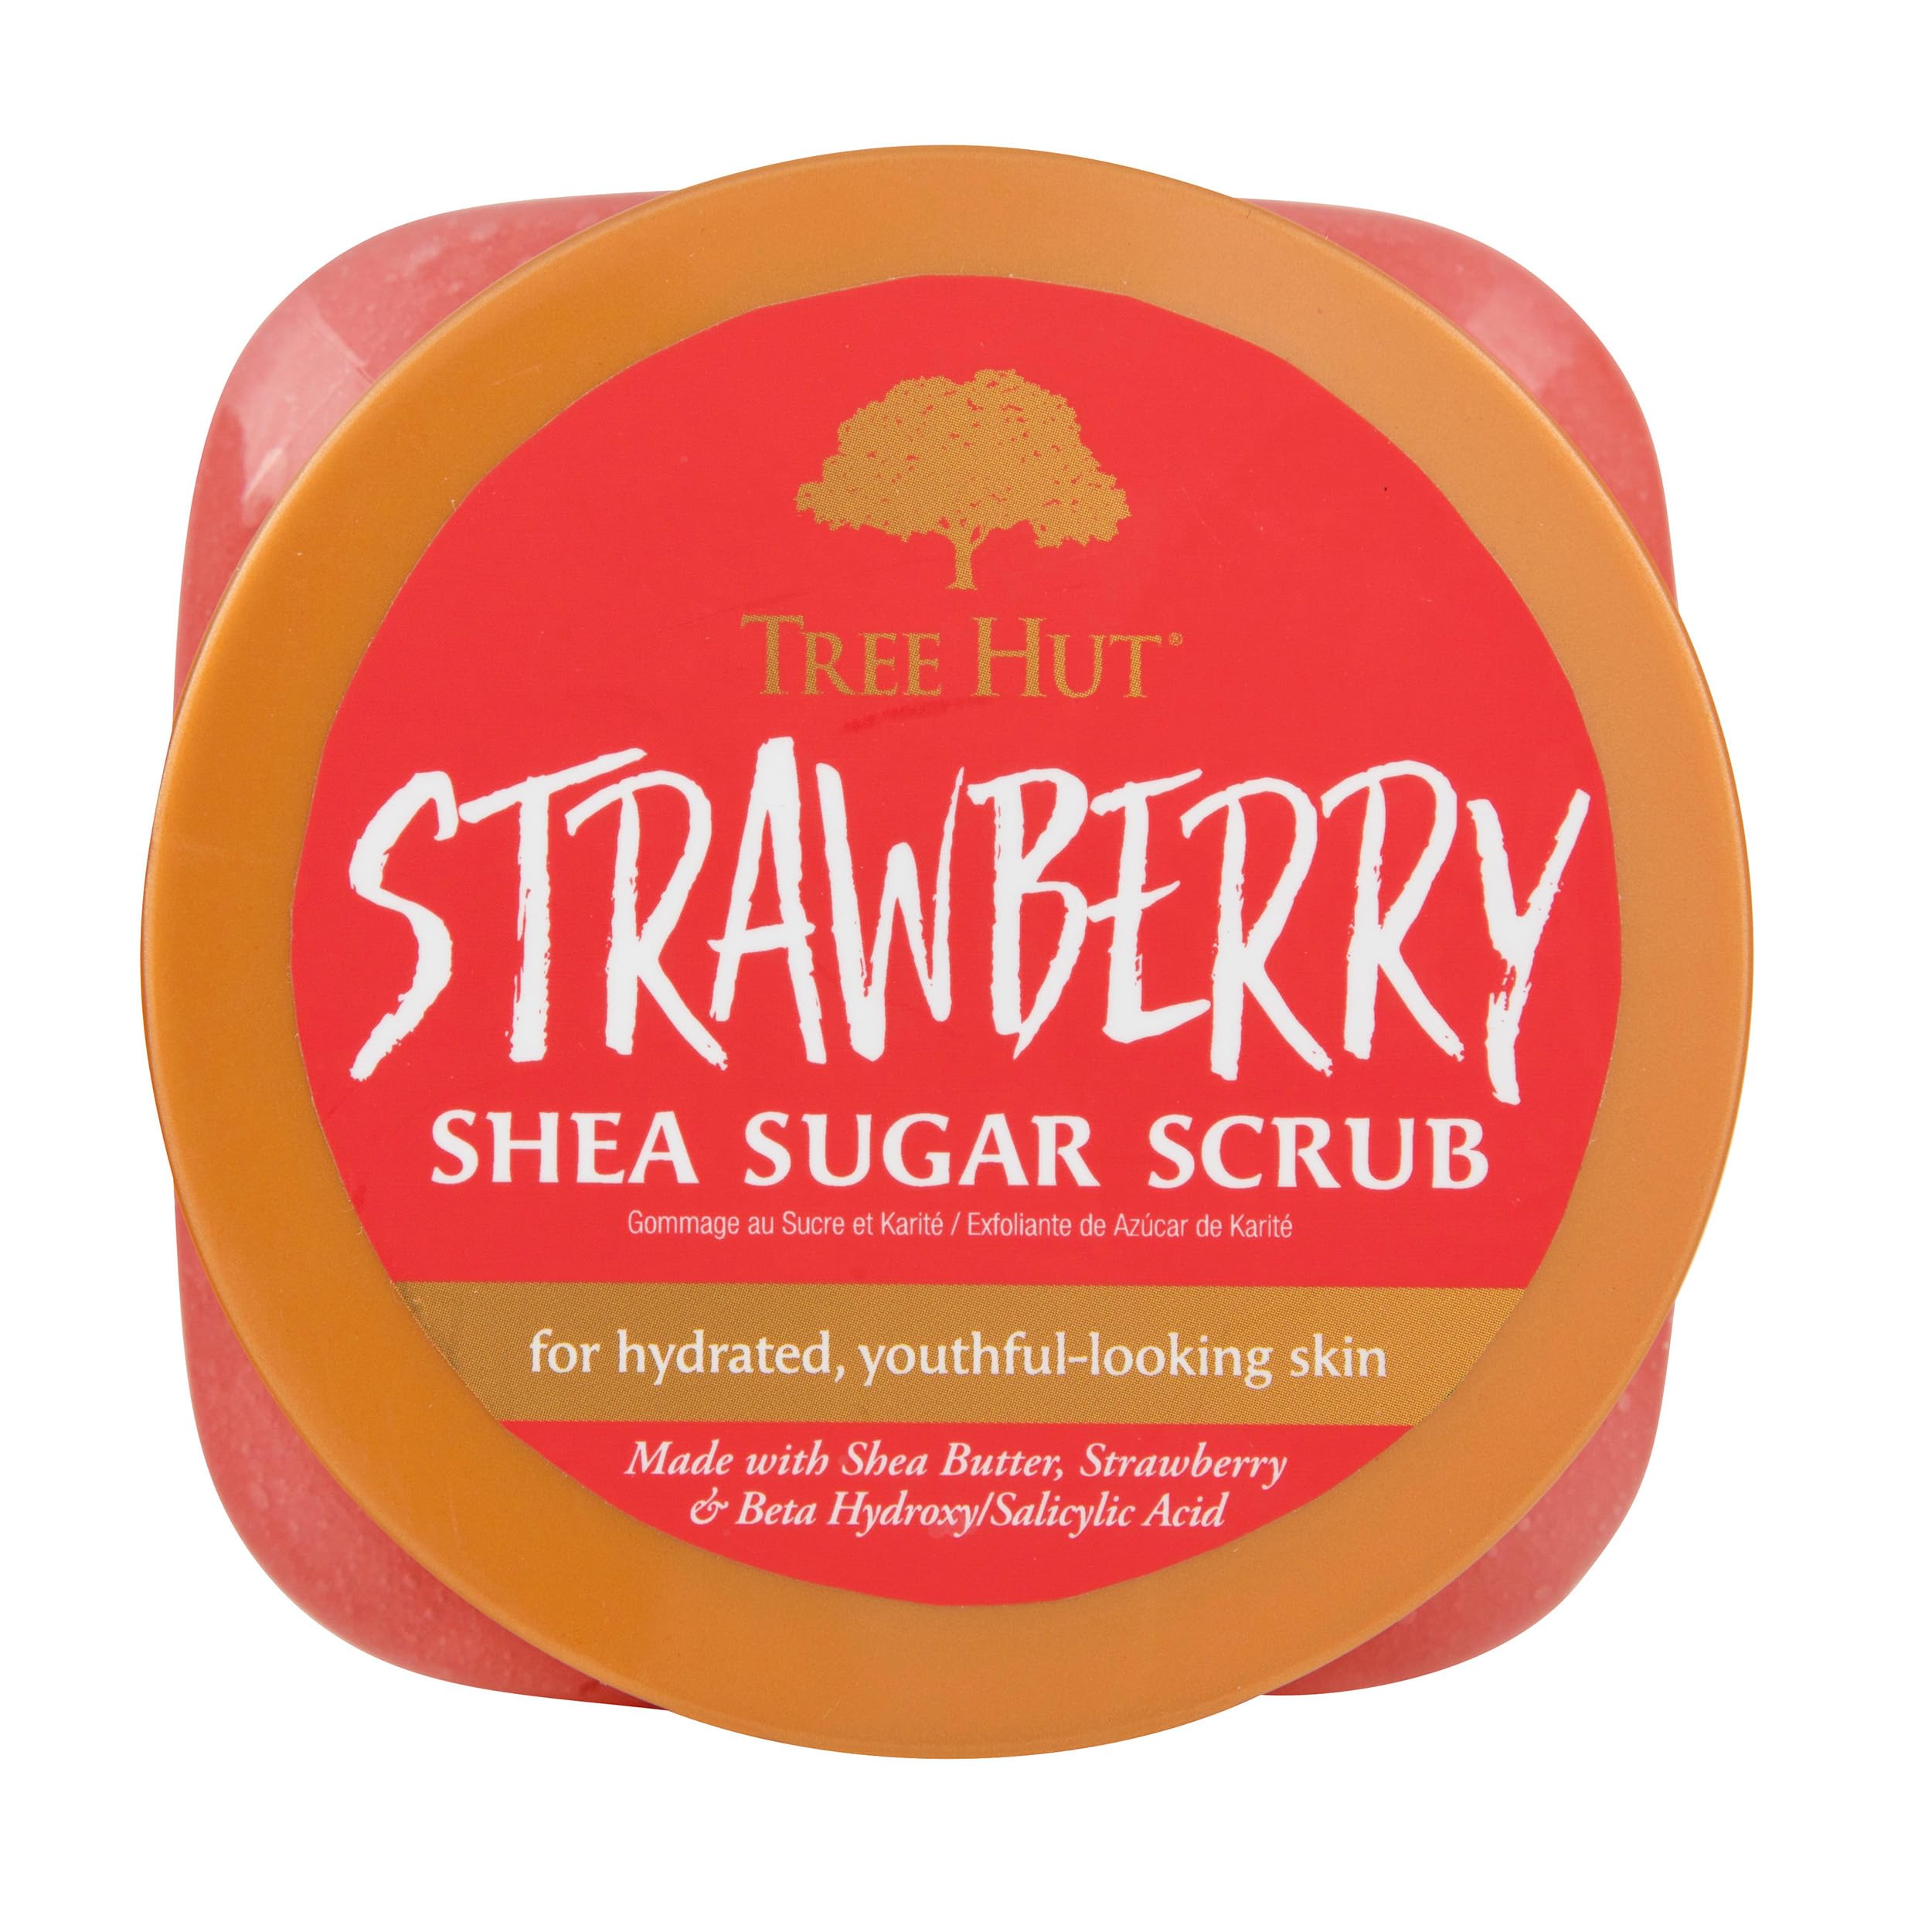 Tree Hut Strawberry Shea Sugar Exfoliating & Hydrating Body Scrub, 18 oz